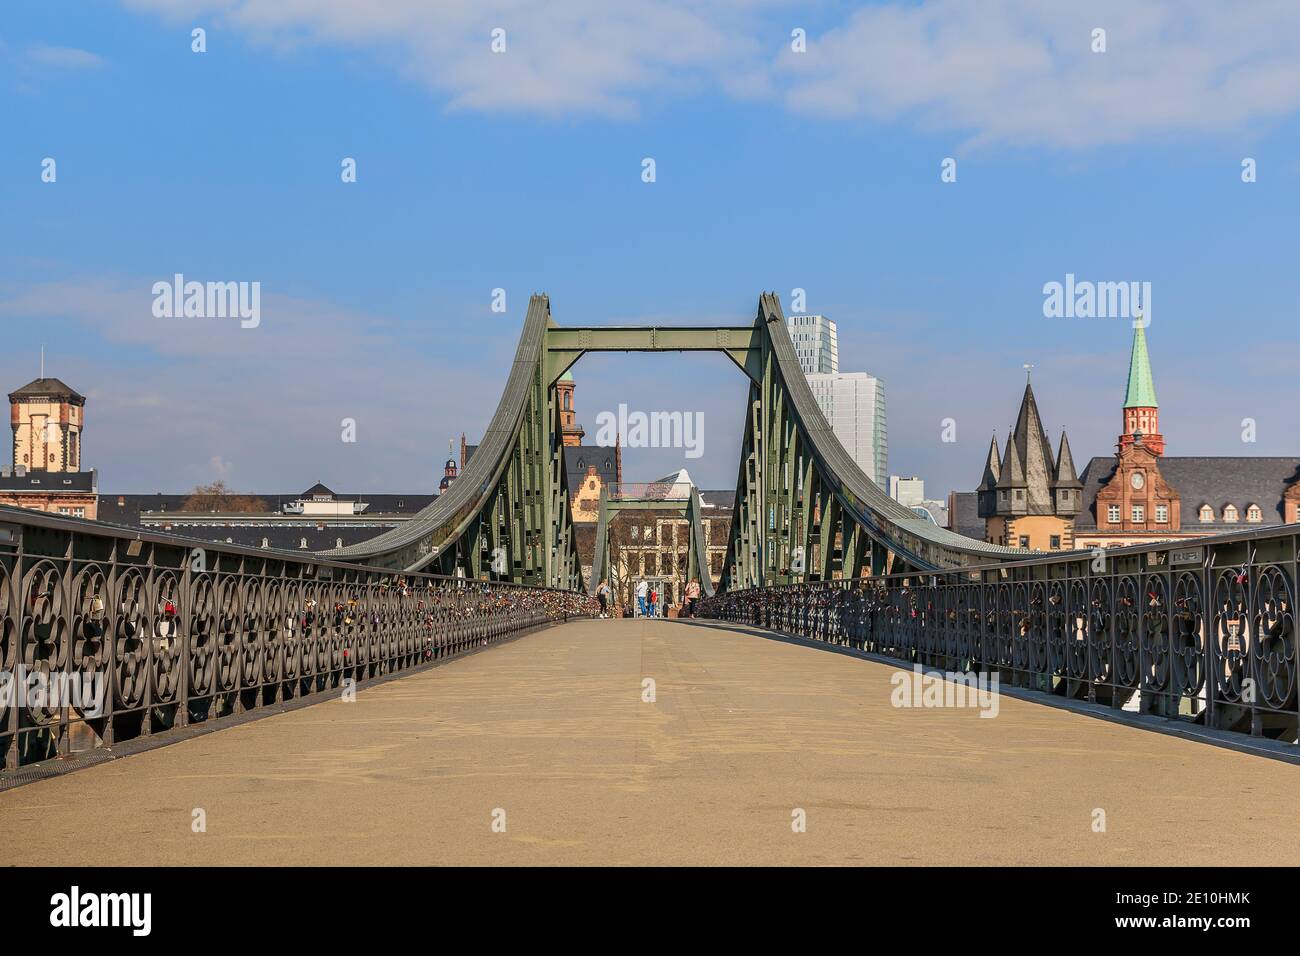 Fußgängerbrücke über den Main in Frankfurt. Eisenbrücke tagsüber mit wenigen Leuten. Häuser der Altstadt im Hintergrund mit Sonnenschein Stockfoto